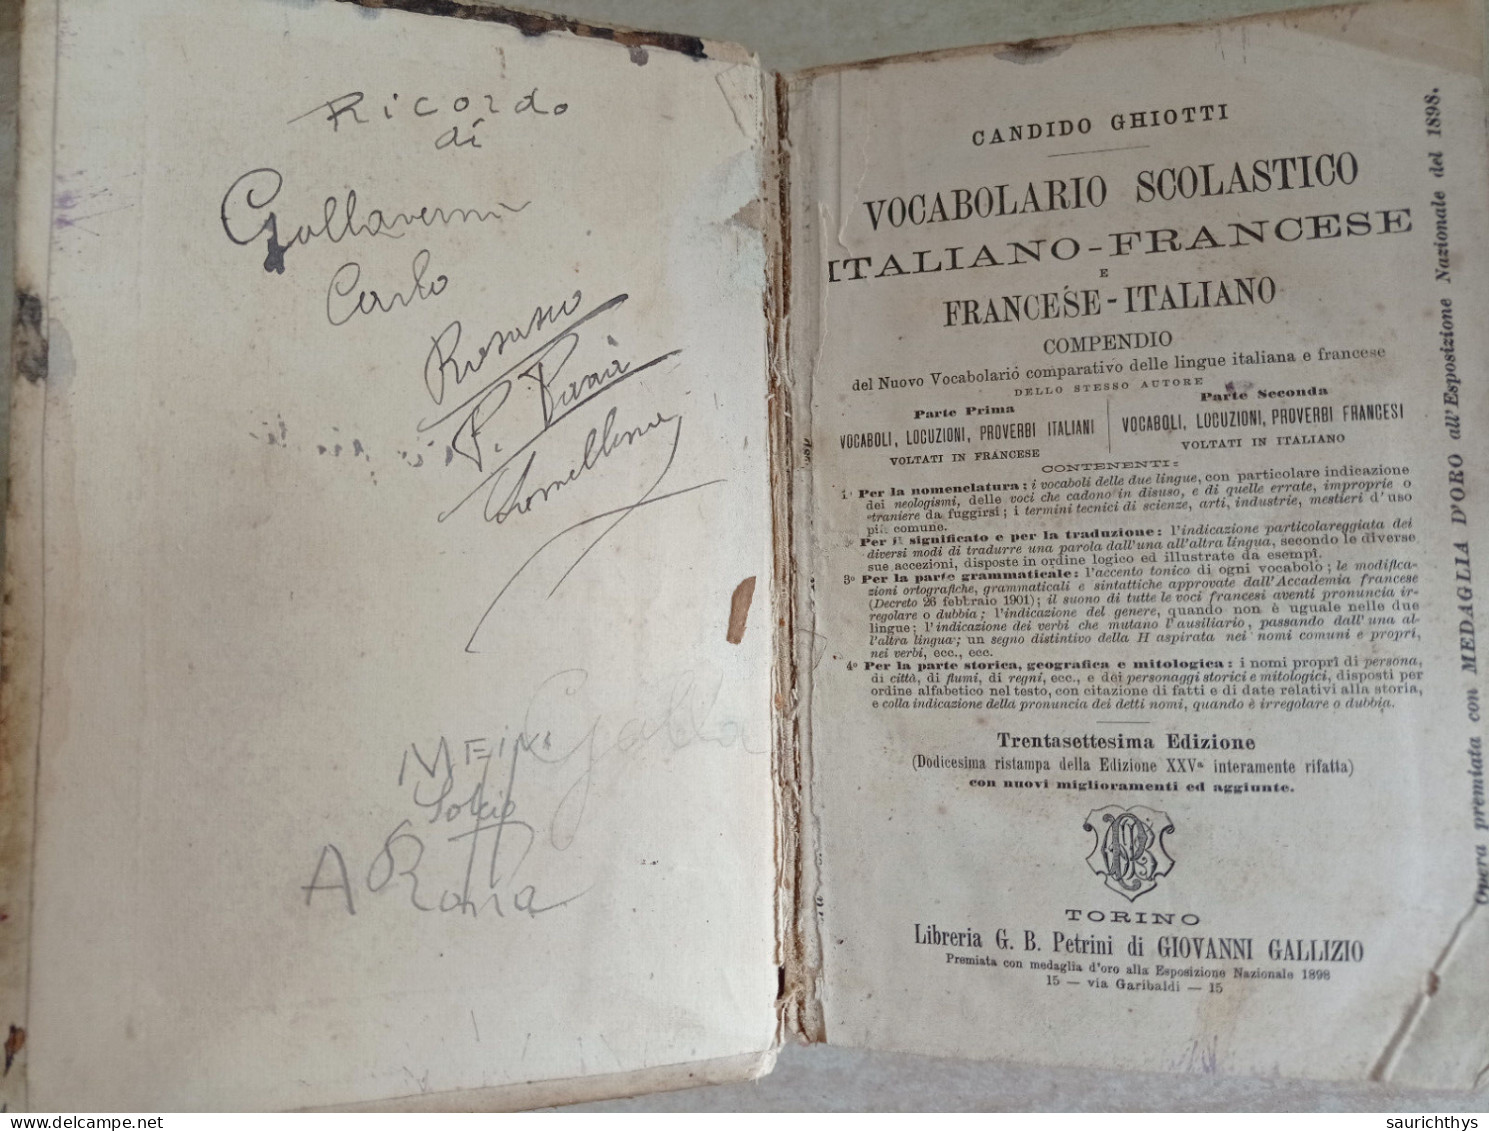 Candido Ghiotti Vocabolario Scolastico Italiano Francese Libreria Petrini Di Giovanni Gallizio Torino 1890 - Libri Antichi